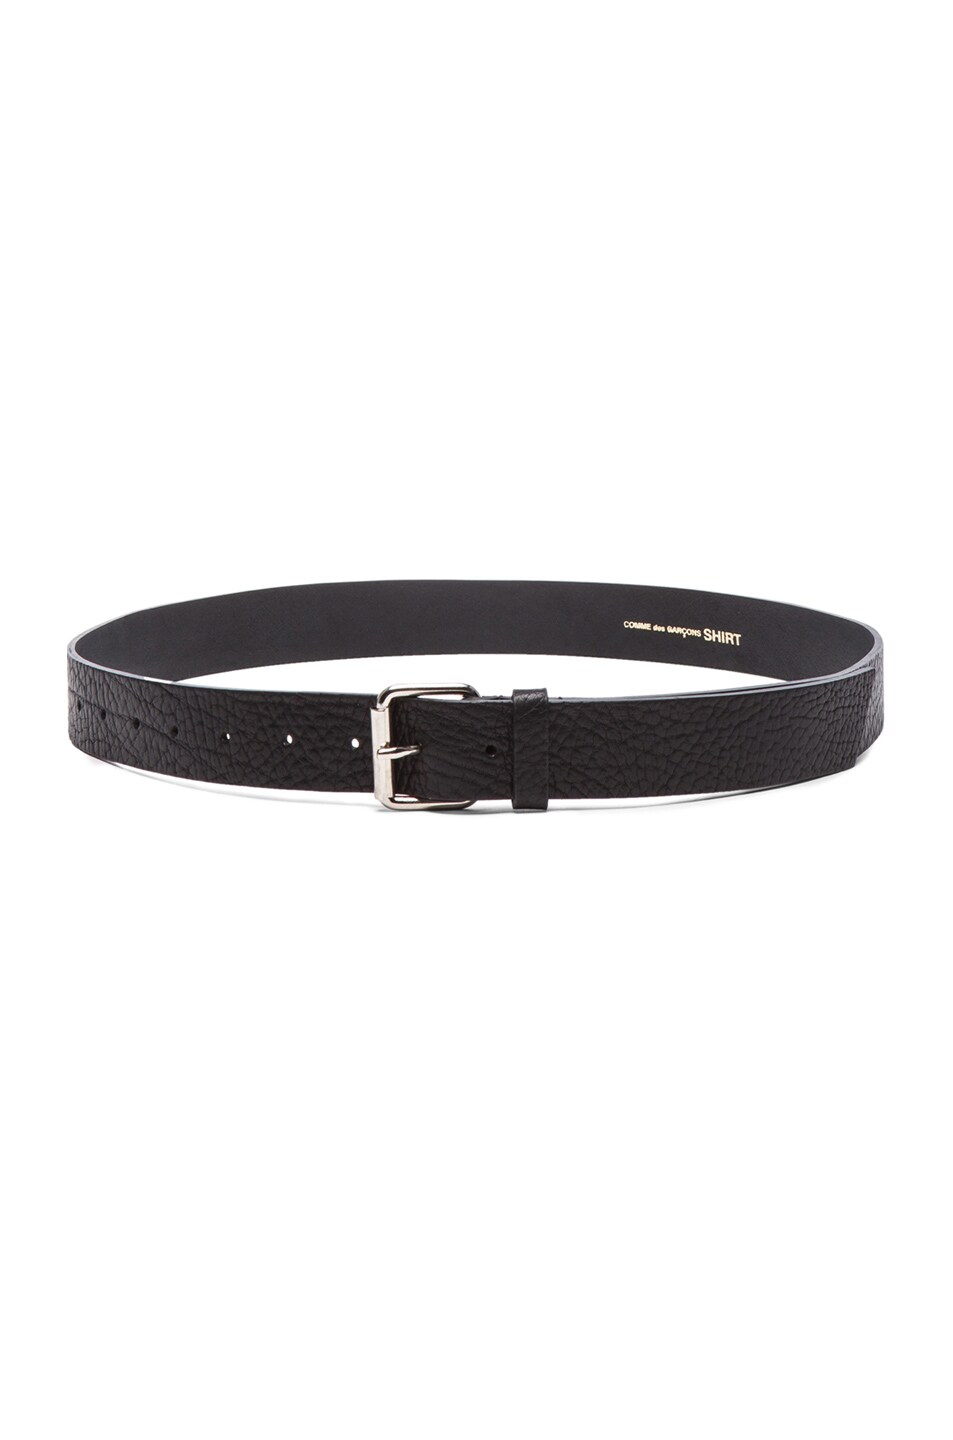 COMME des GARCONS SHIRT Leather Belt in Black | FWRD